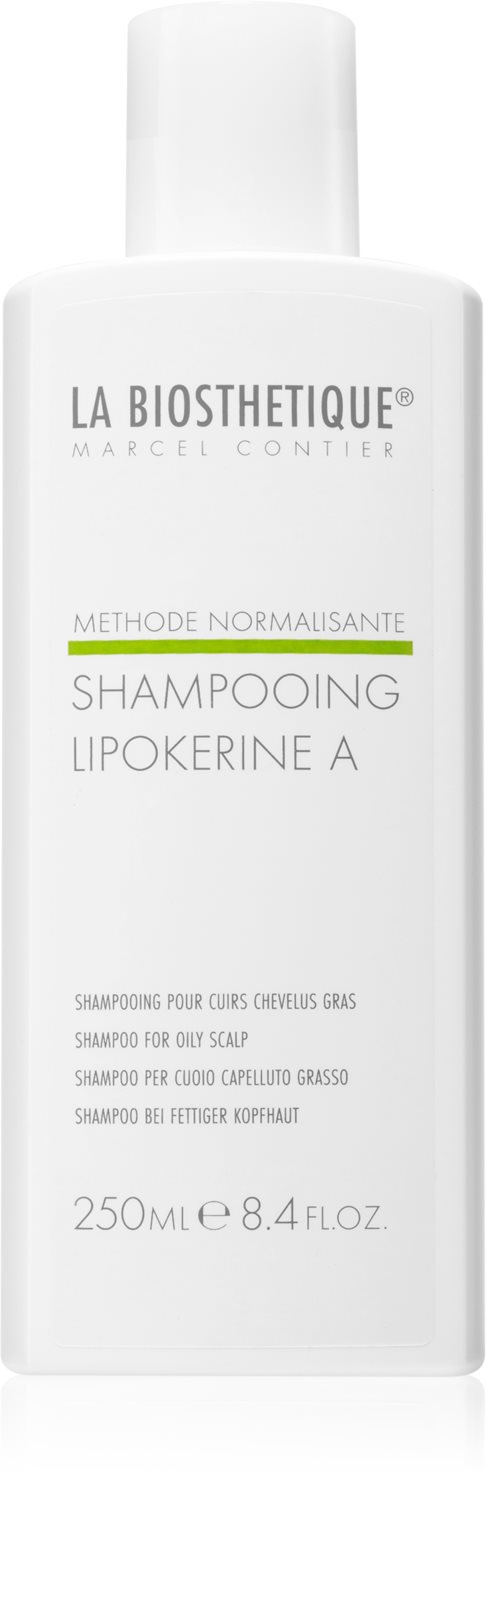 La biosthetique – Shampoo Lipokerine A